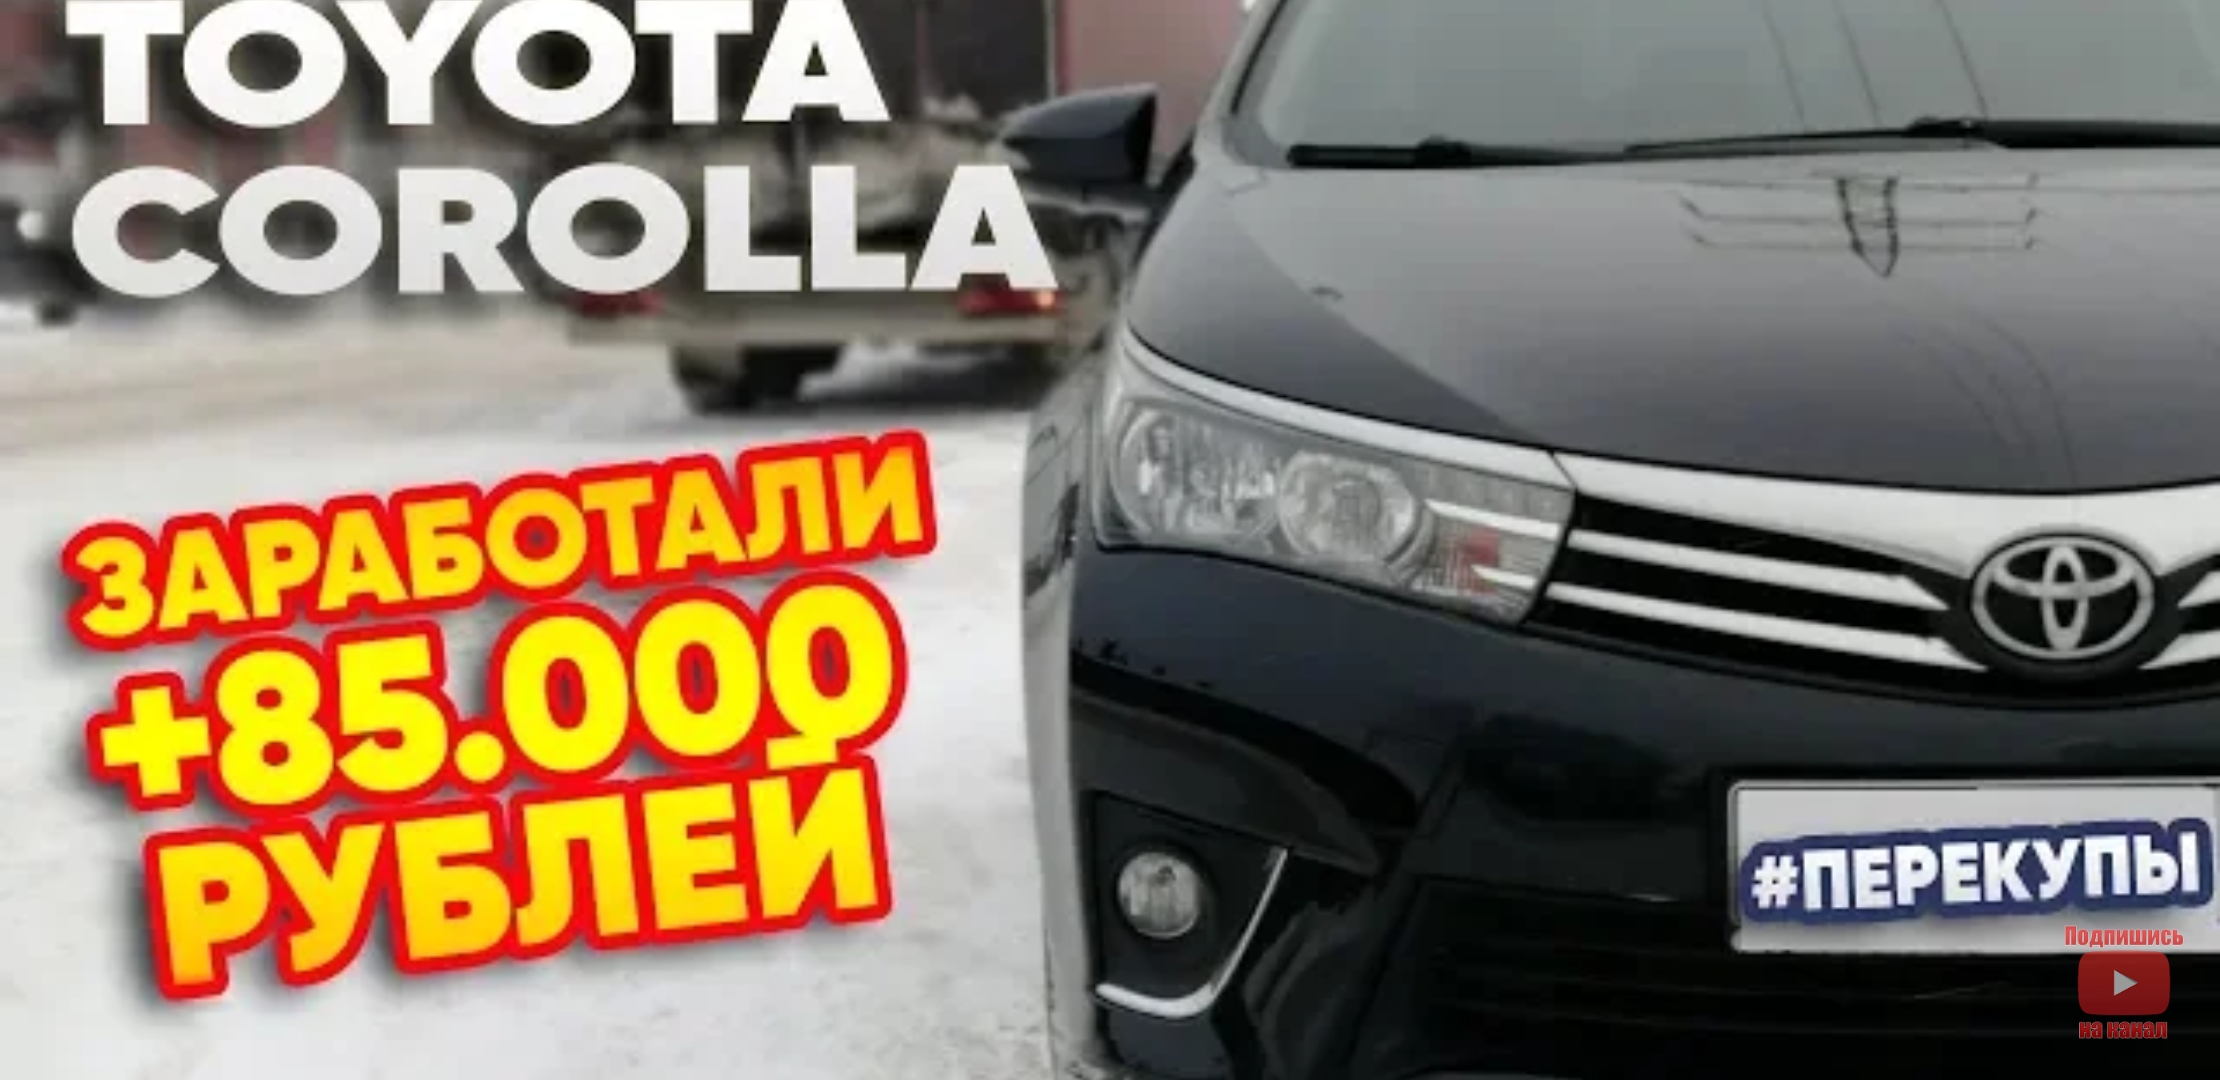 Анонс видео-теста Toyota Corolla 180 Заработали 85 000 рублей